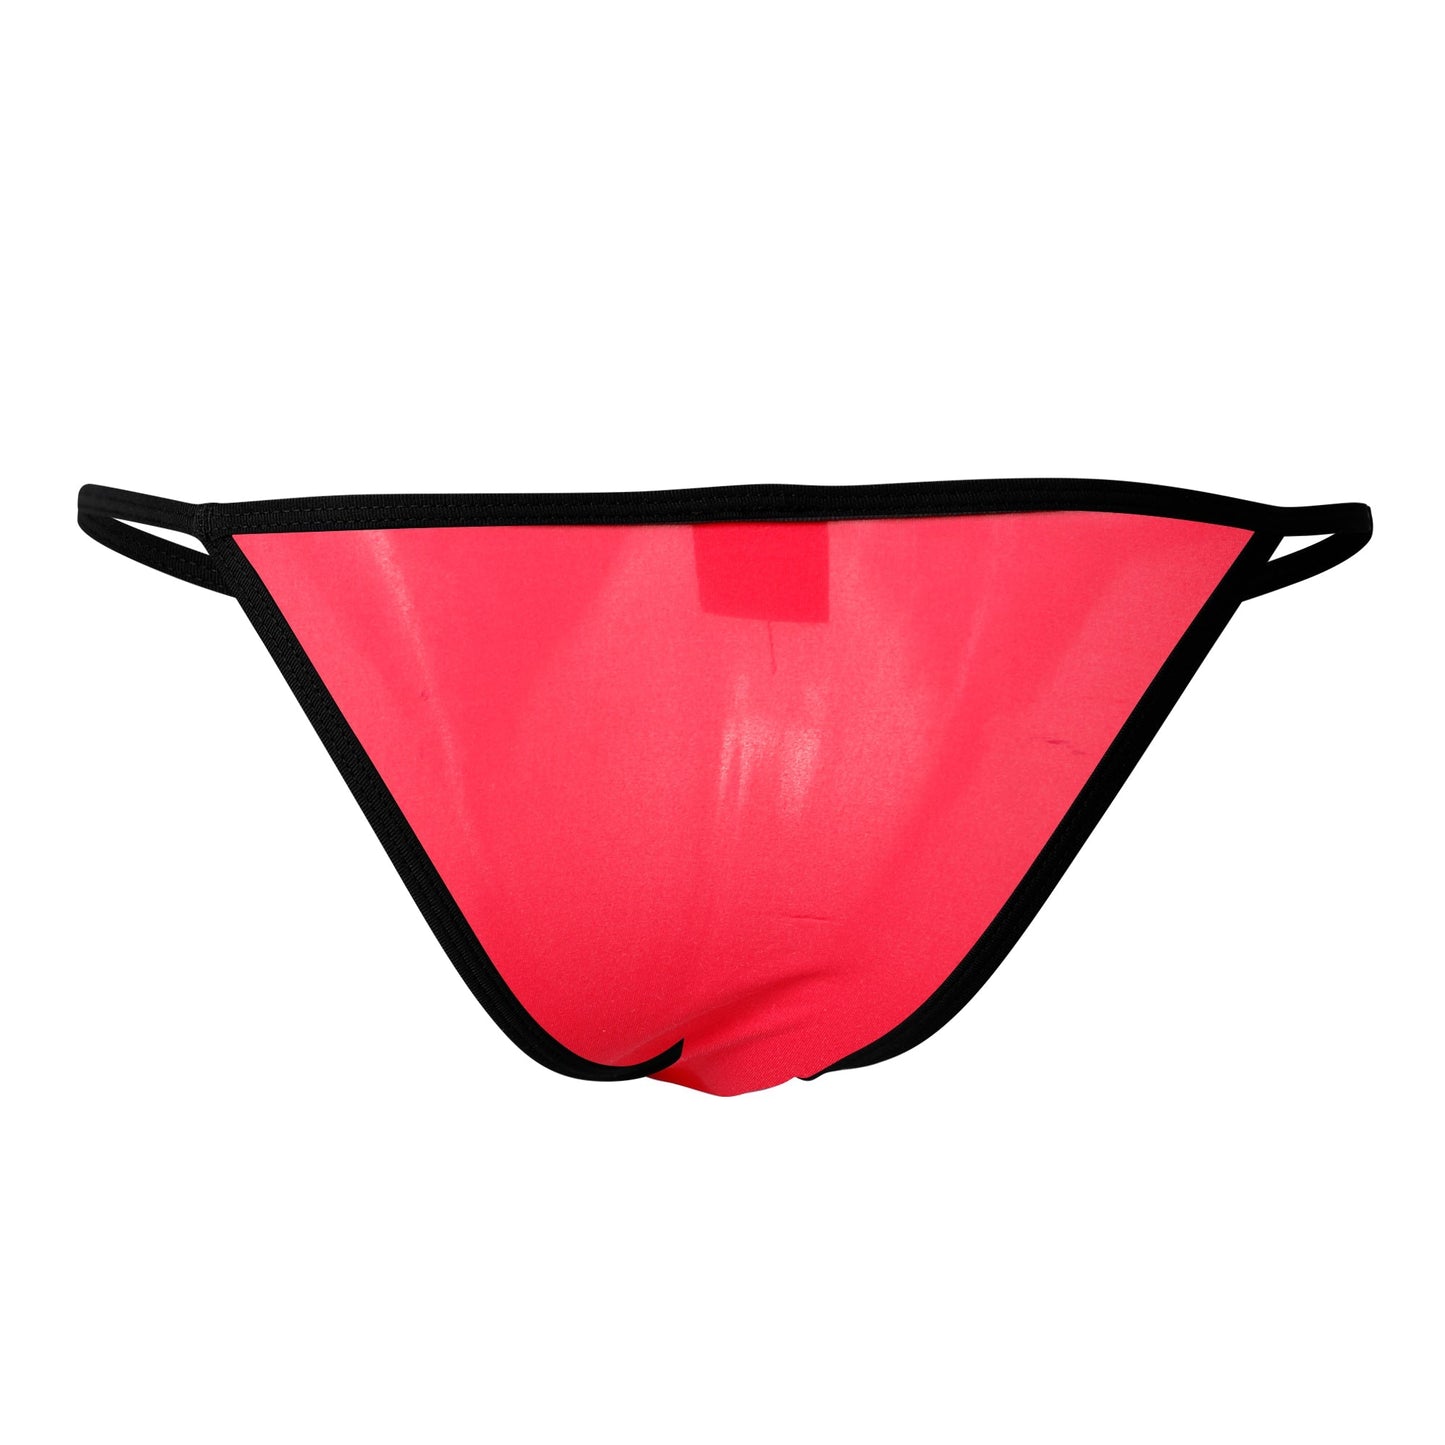 CUT4MEN - C4M12 - Briefkini Men Underwear - Red - 4 Sizes - 1 Piece